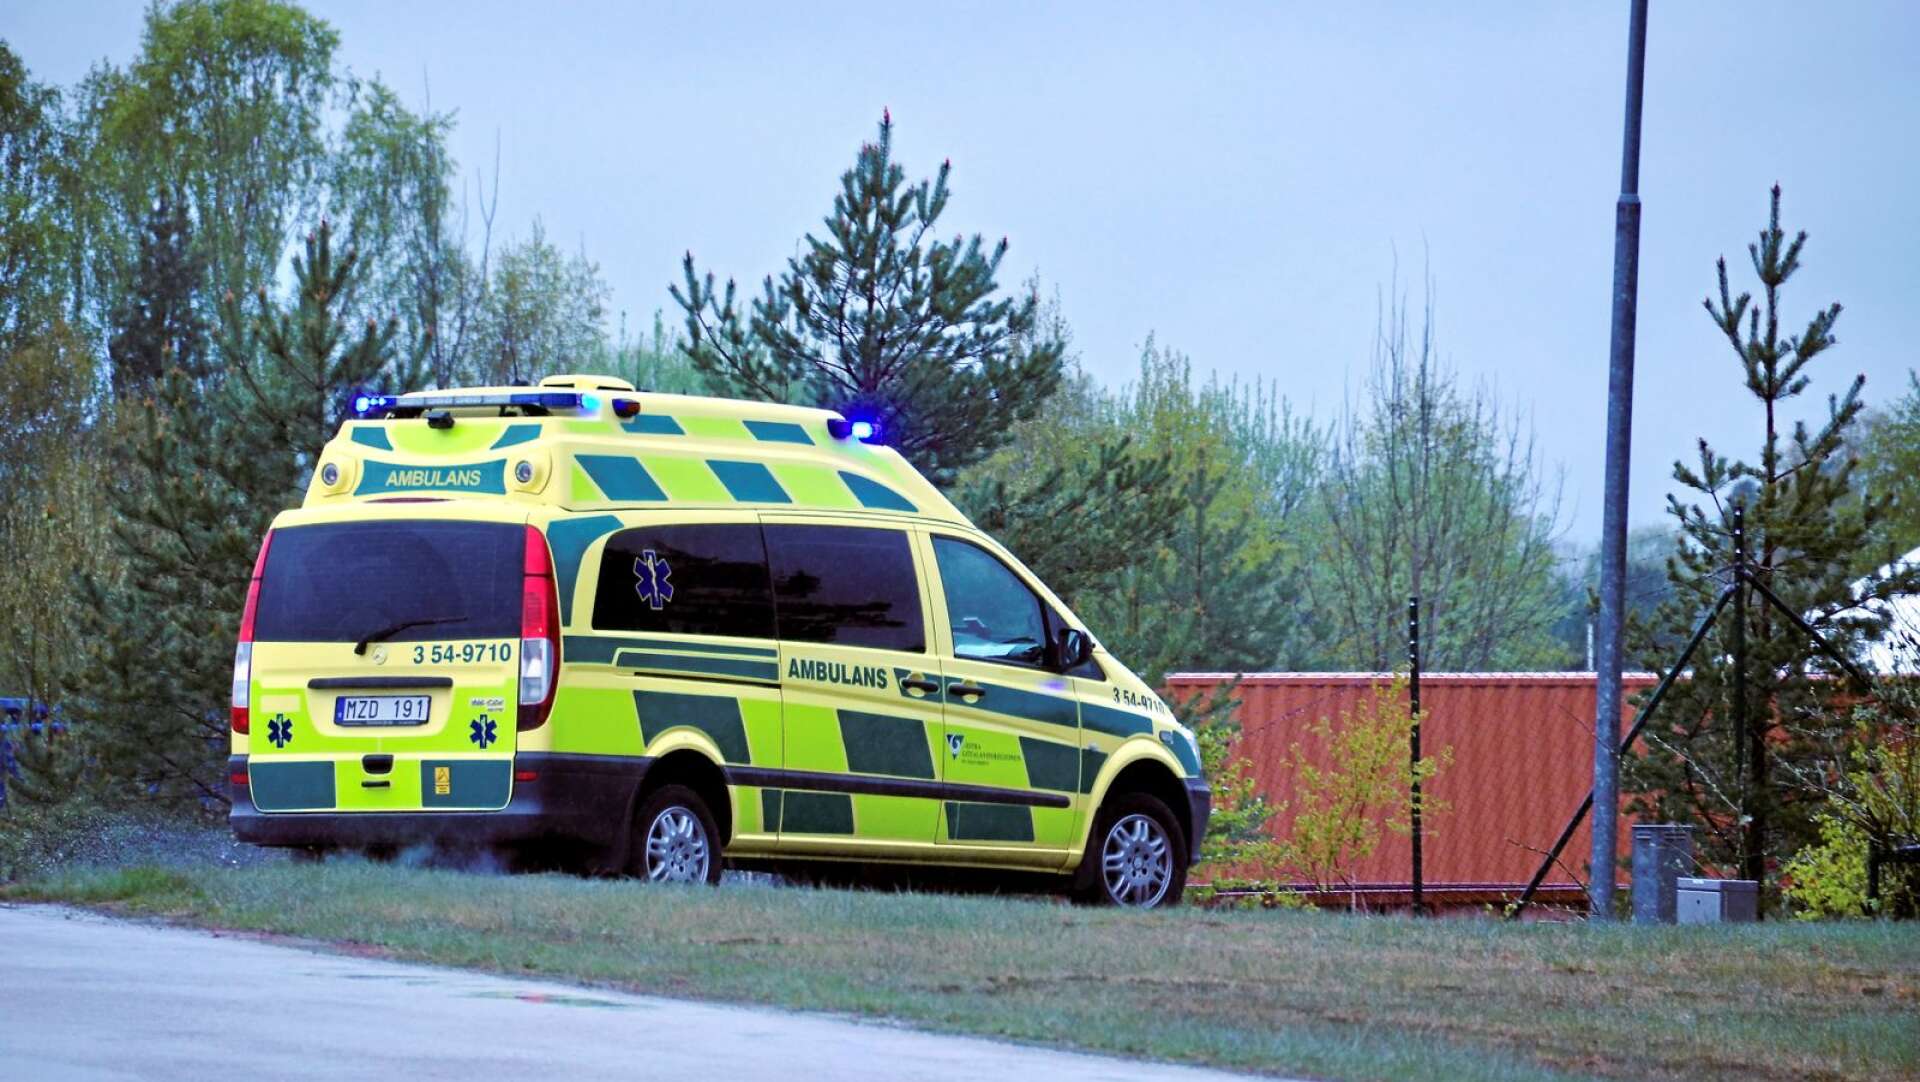 Förslaget om att placera en ambulans i Bäckefors är inte genomförbart, hävdar insändaren.